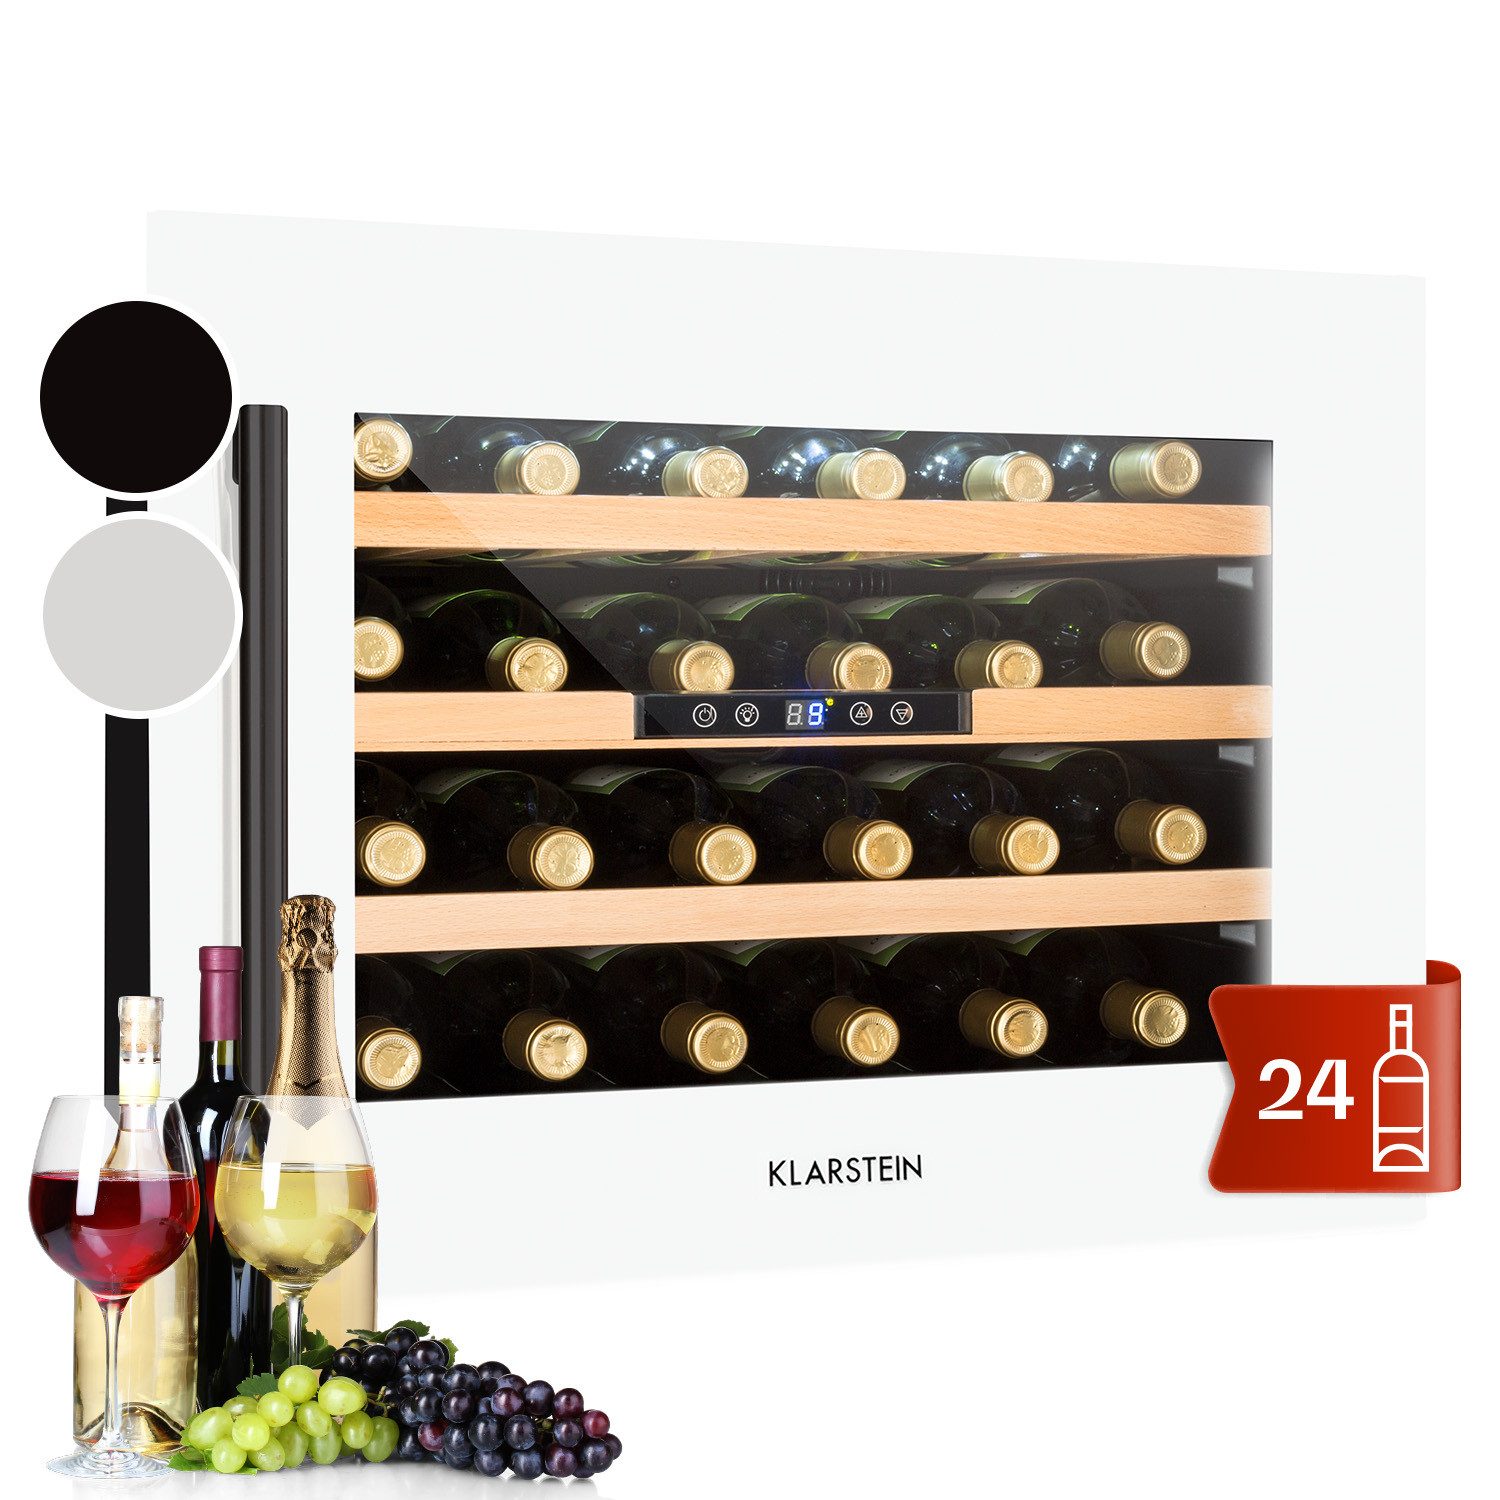 Klarstein Weinkühlschrank Vinsider 24 bottle Uno, für 24 Standardflaschen á 0,75l,Wein Flaschenkühlschrank Weintemperierschrank Weinschrank Kühlschrank